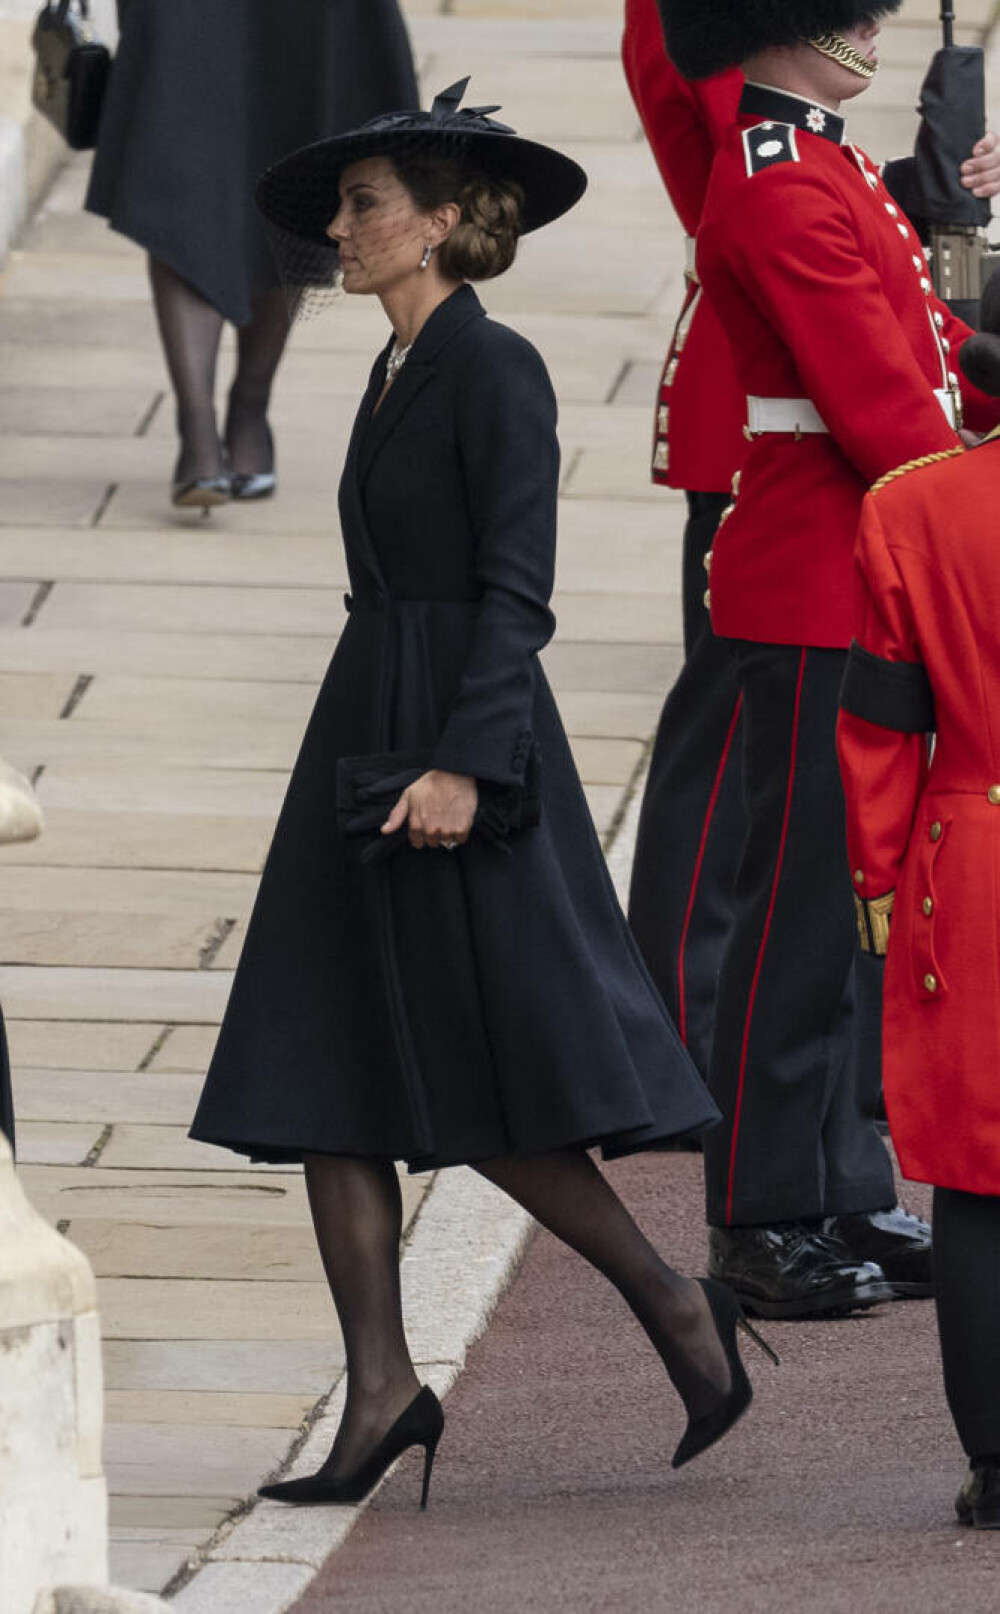 Ținuta lui Kate Middleton de la funeraliile reginei Elisabeta a II-a. Prințesa a purtat un colier special | GALERIE FOTO - Imaginea 13